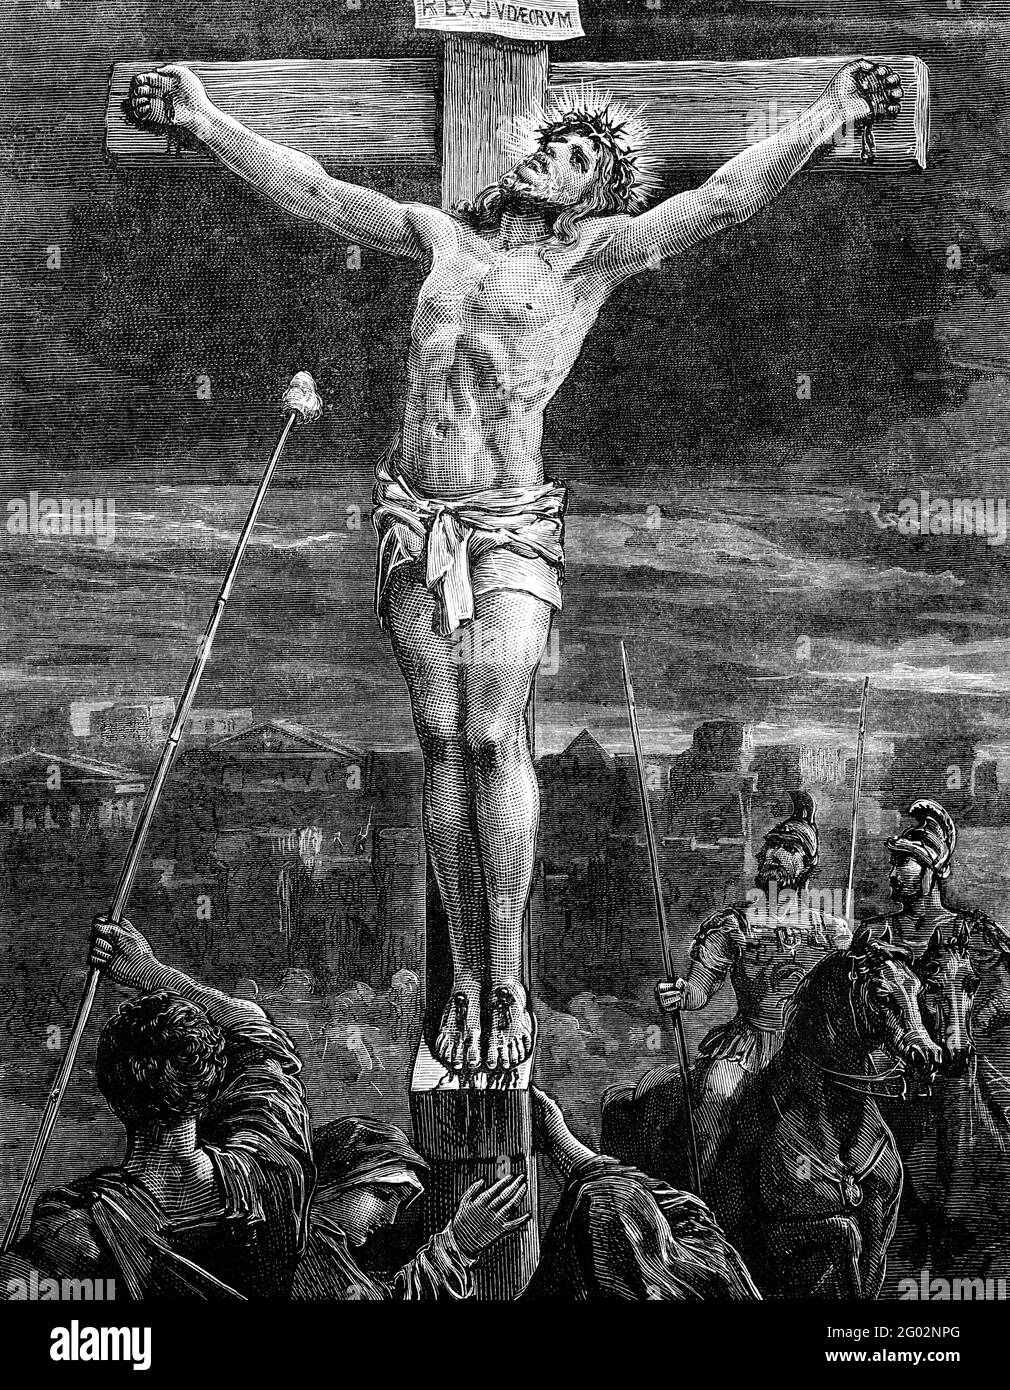 Une image d'illustration vintage gravée de la Crucifixion de Jésus-Christ, d'un livre victorien daté de 1881 qui n'est plus en droit d'auteur Banque D'Images